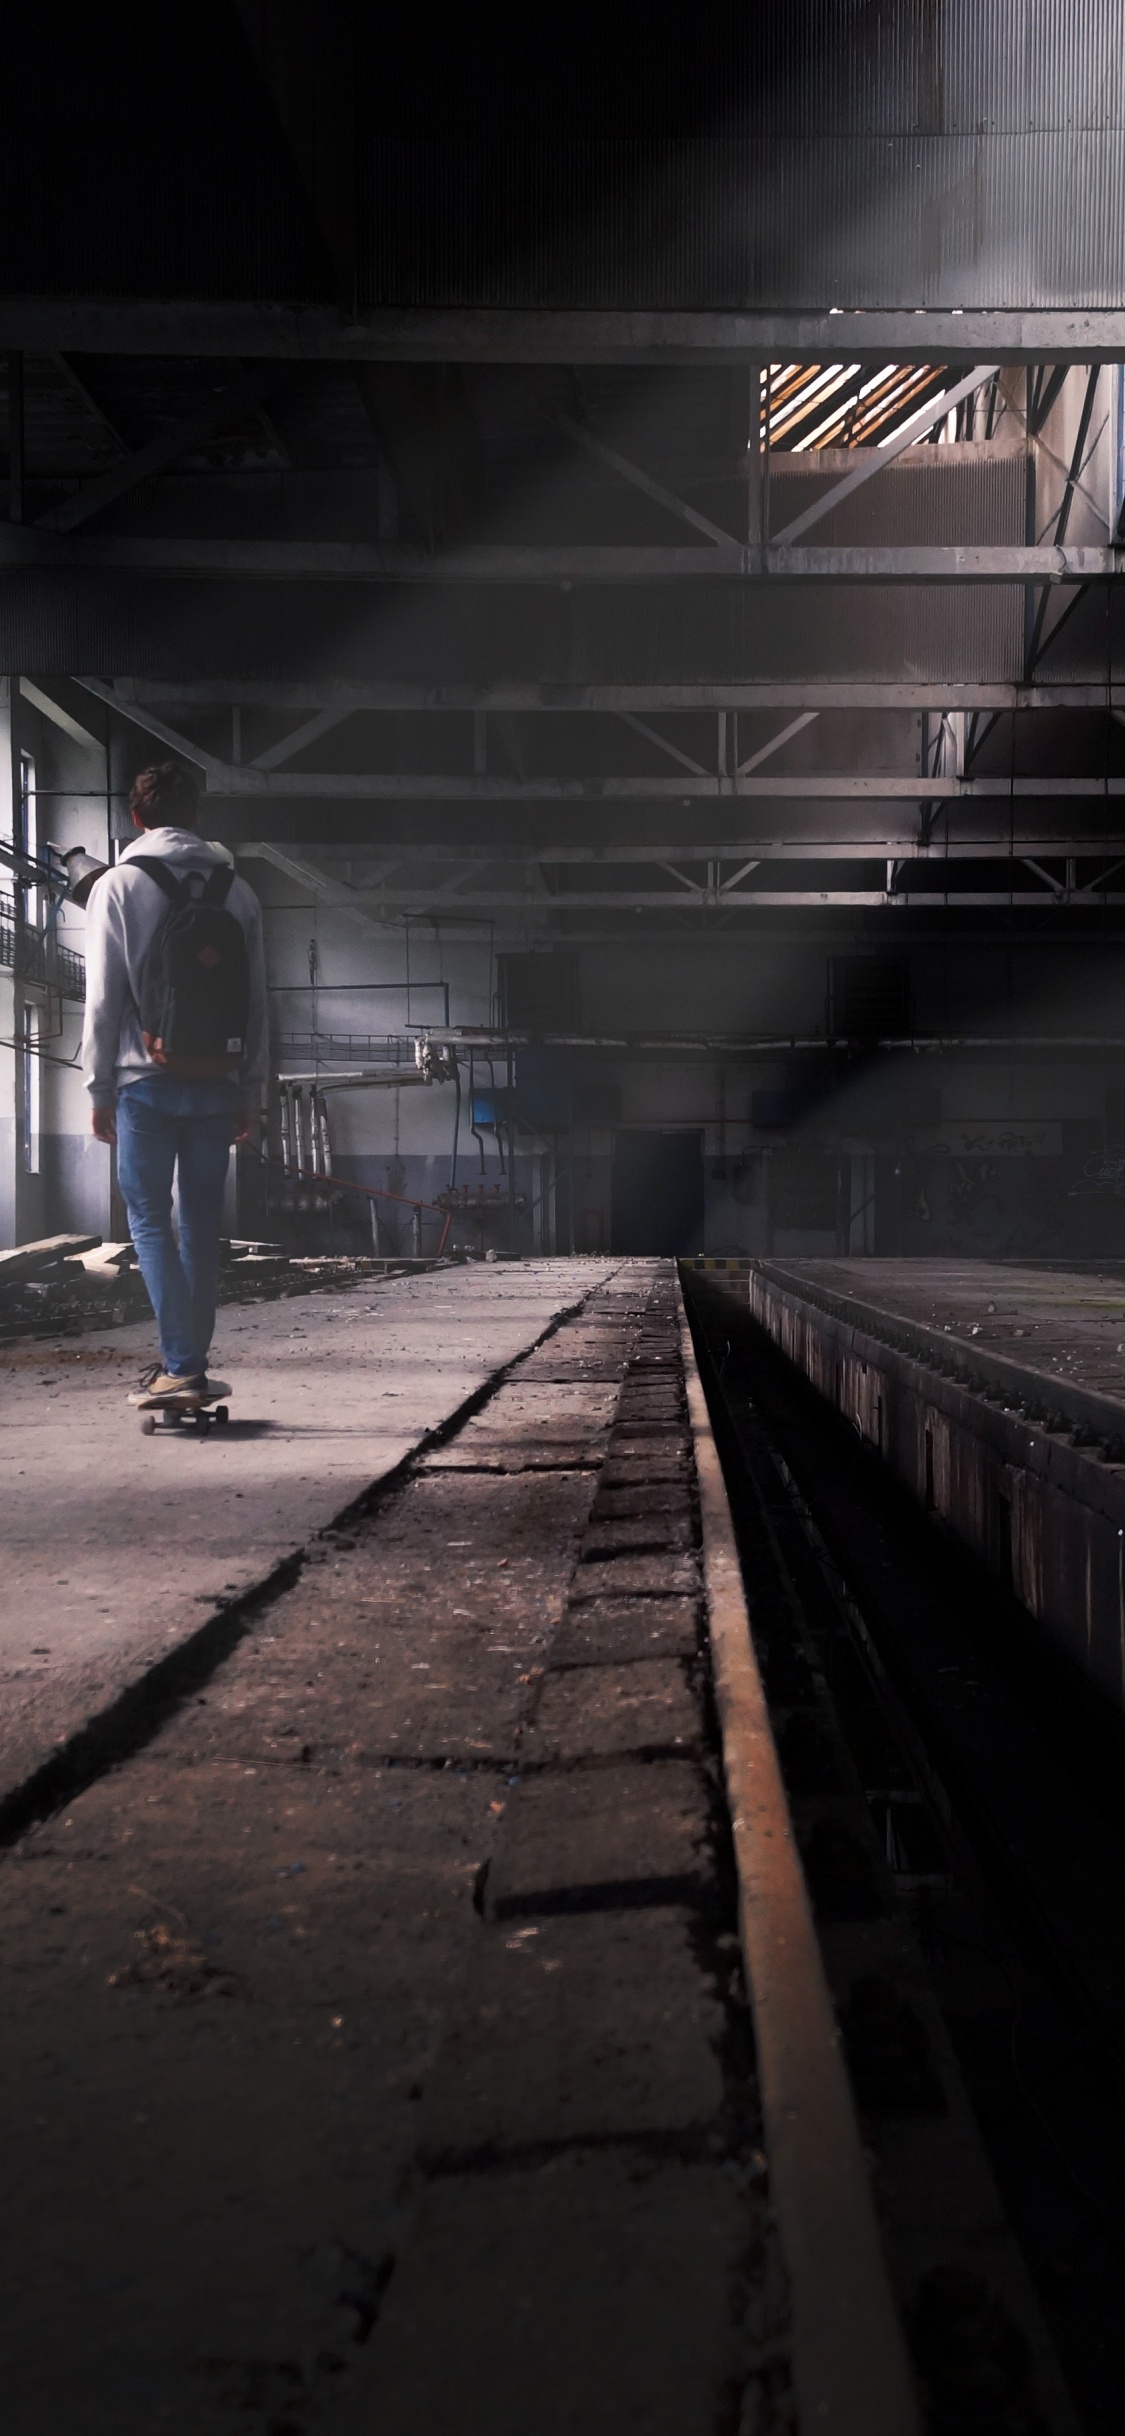 Man in Blue Denim Jeans Walking on Train Station. Wallpaper in 1125x2436 Resolution